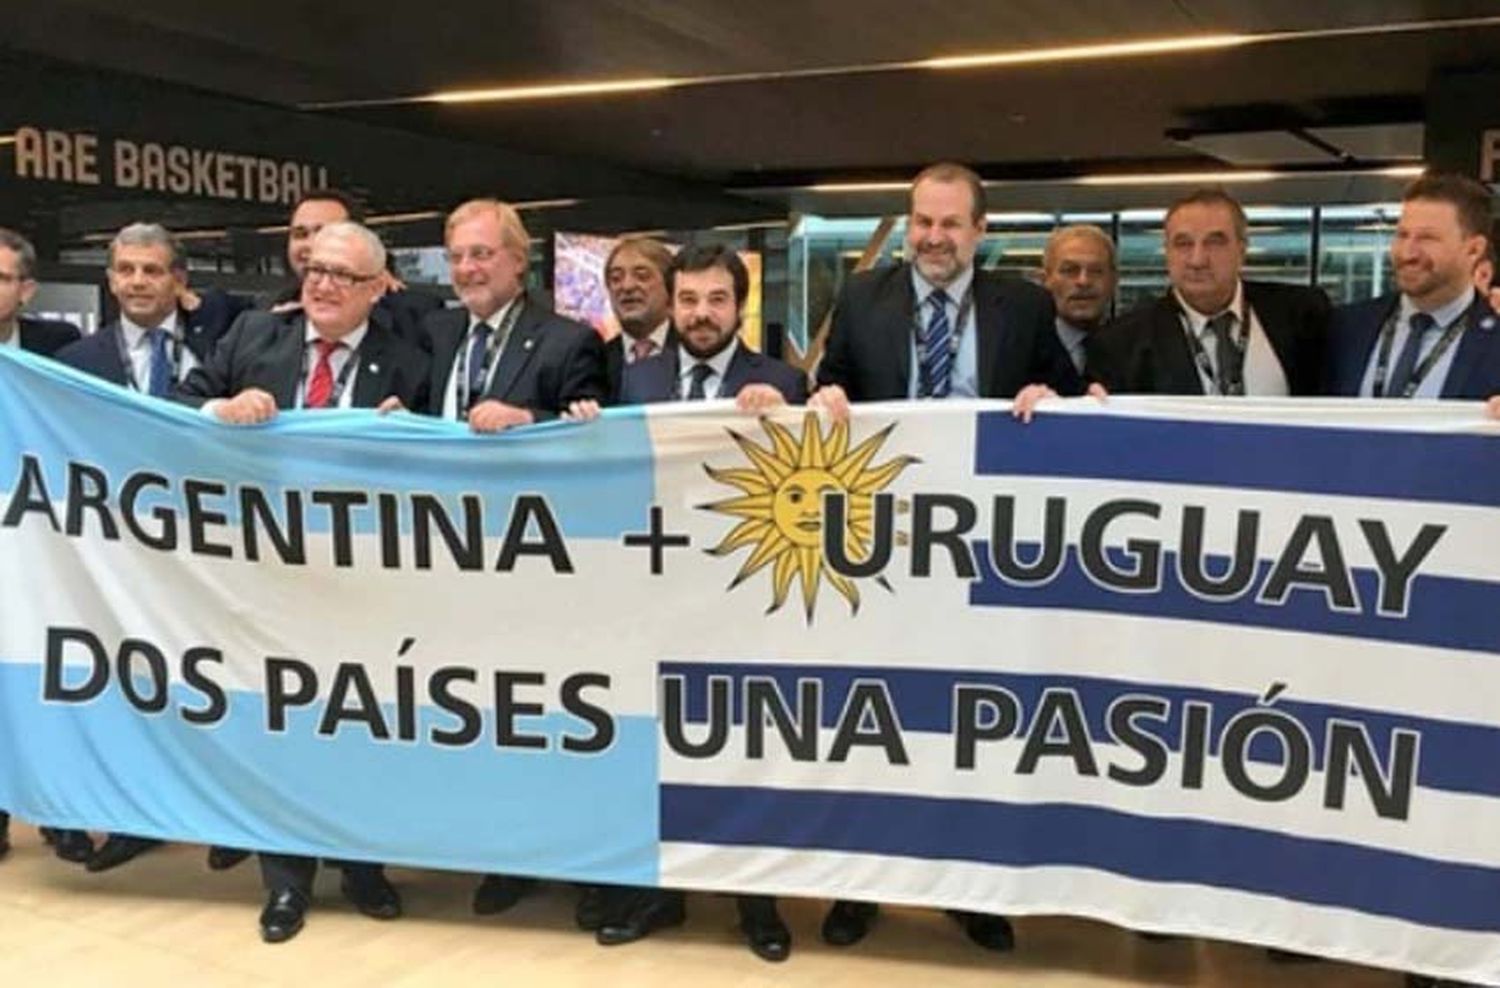 Argentina y Uruguay organizarán el Mundial de básquet del 2027